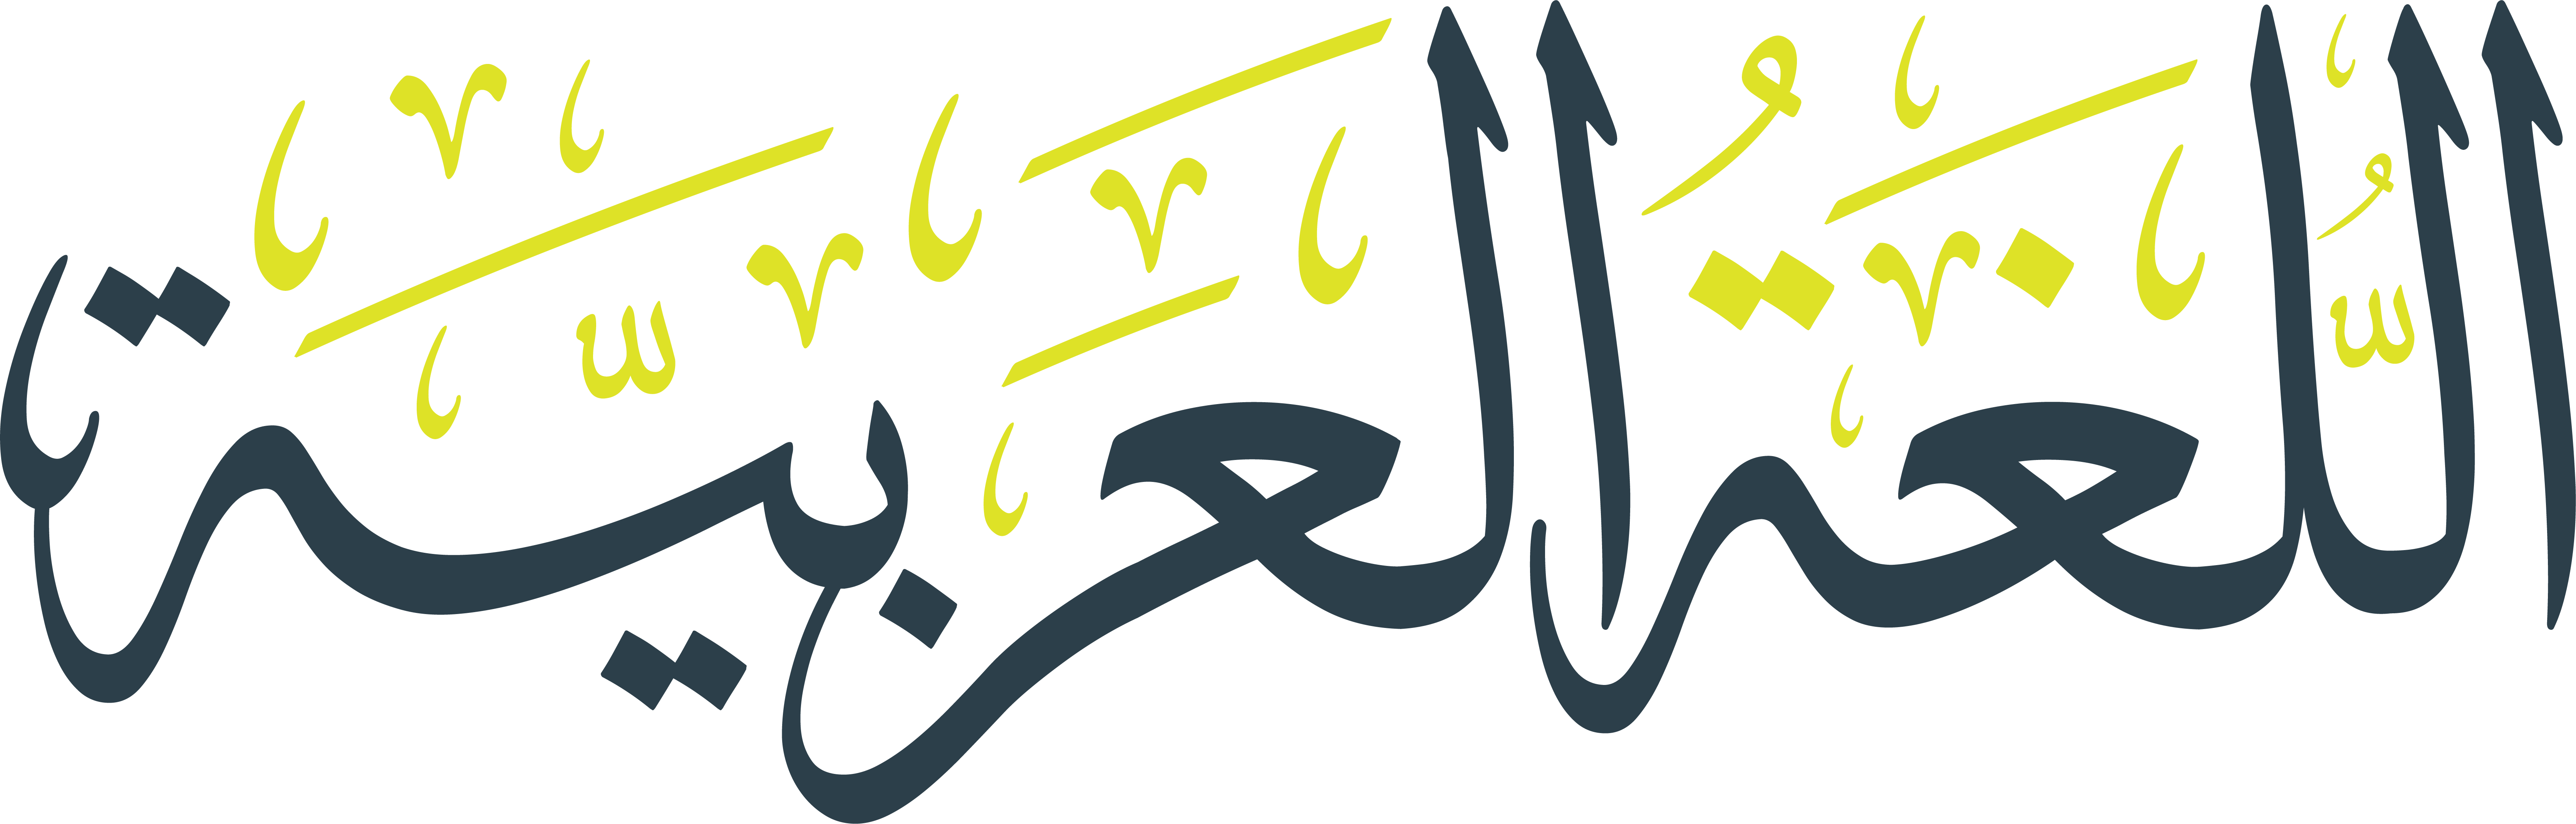 اللغة العربية وميزة الاشتقاقية فيها